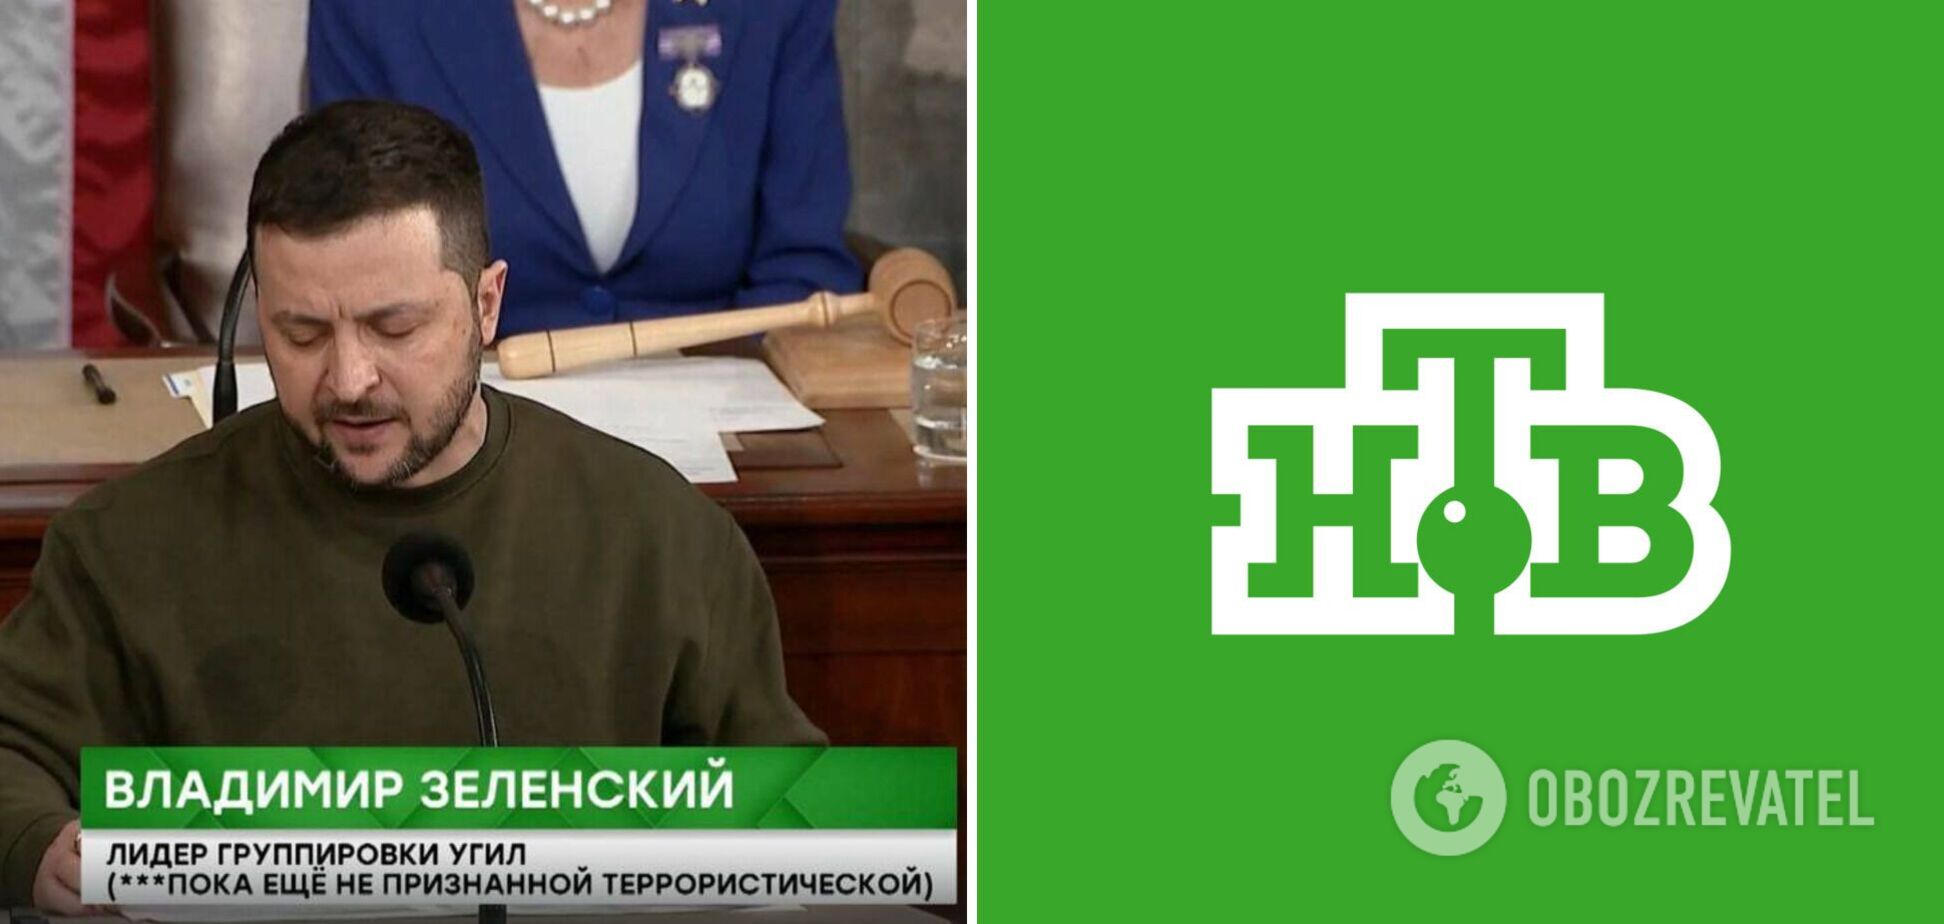 Российский телеканал НТВ в титрах подписал Зеленского и Украину по аналогии с ИГИЛ. Видео